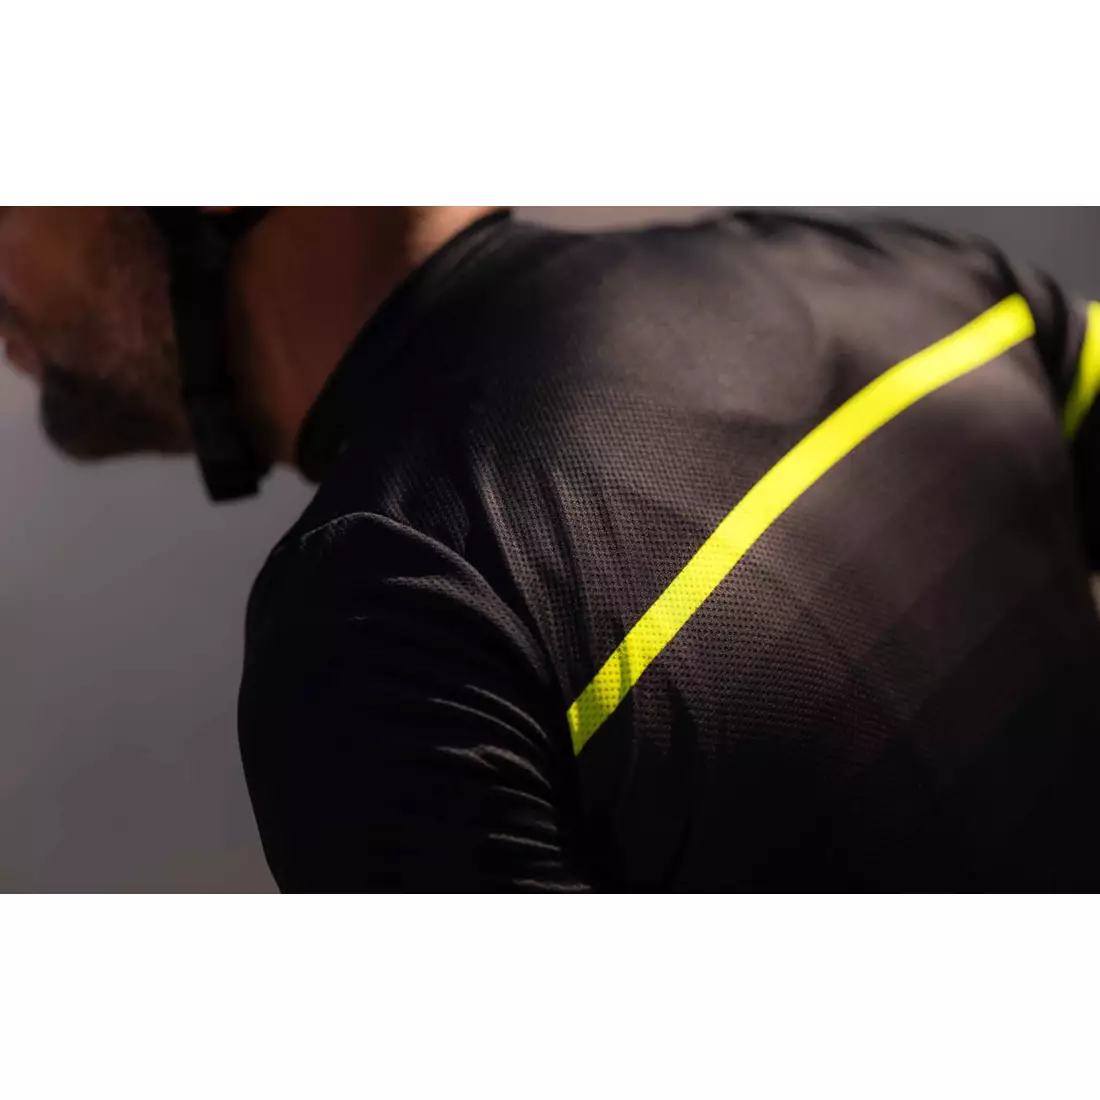 Rogelli HERO II men's cycling jersey, black-fluorine